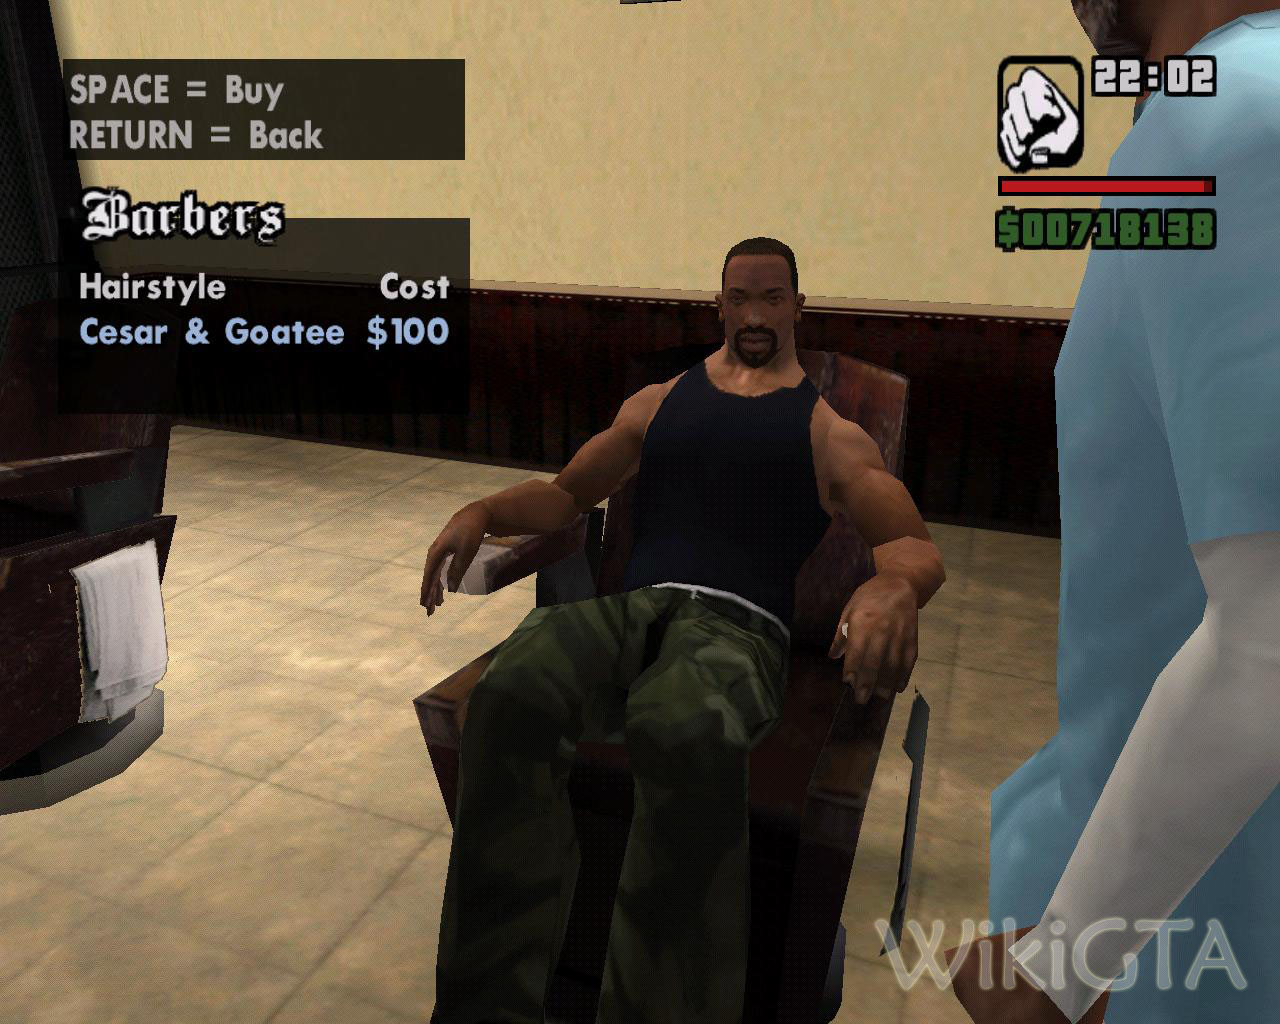 Reeces Hair Facial Studio - WikiGTA - The Complete Grand Theft Auto  Walkthrough